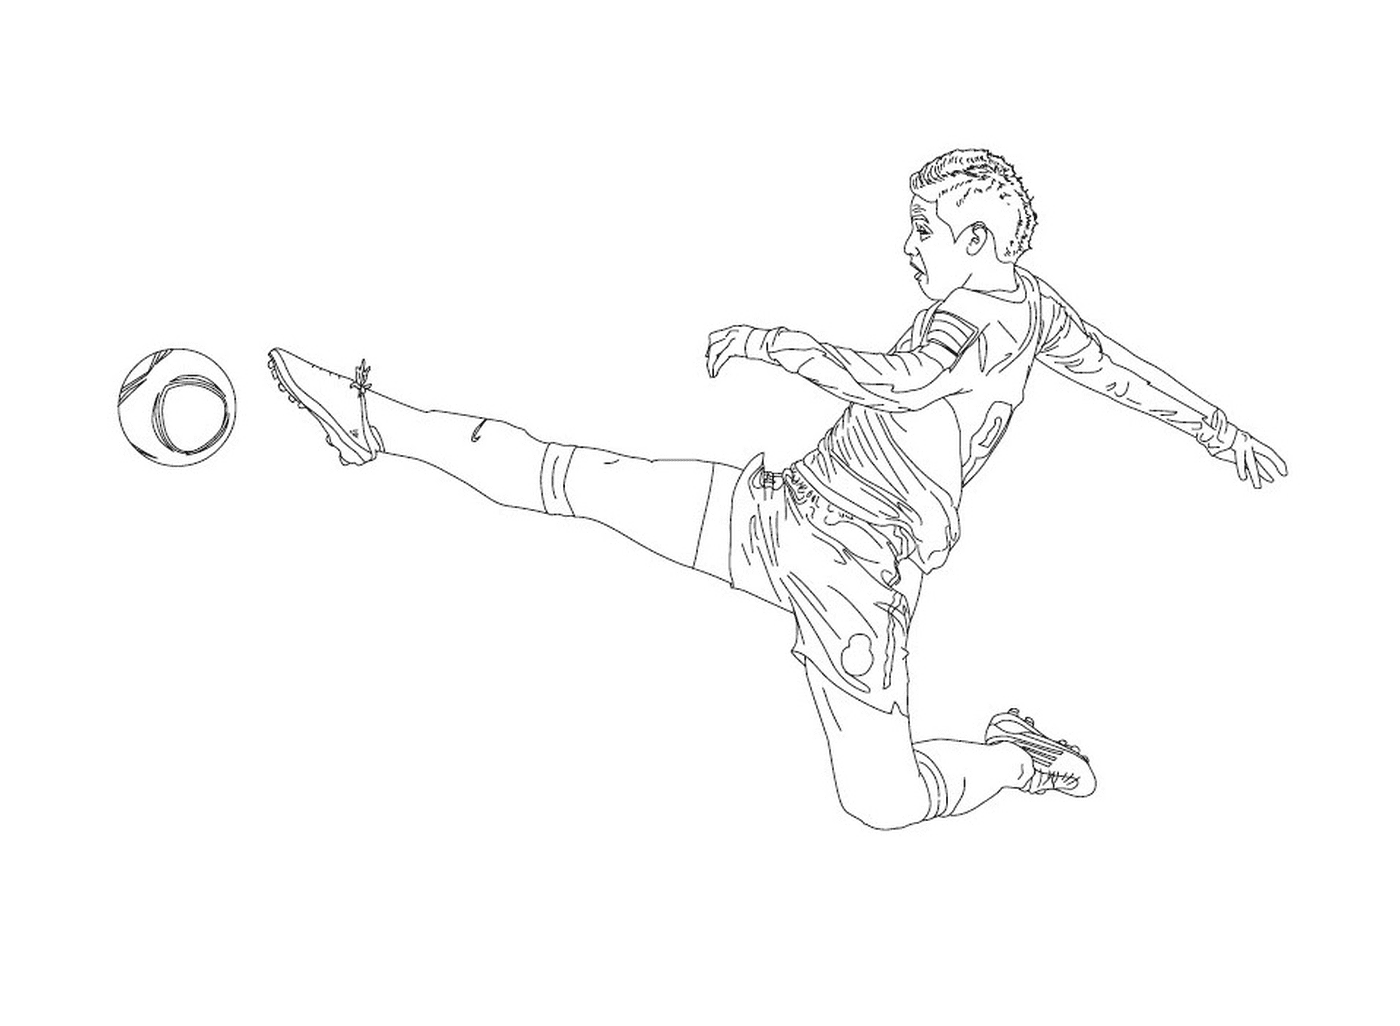 Un chico pateando en una pelota de fútbol